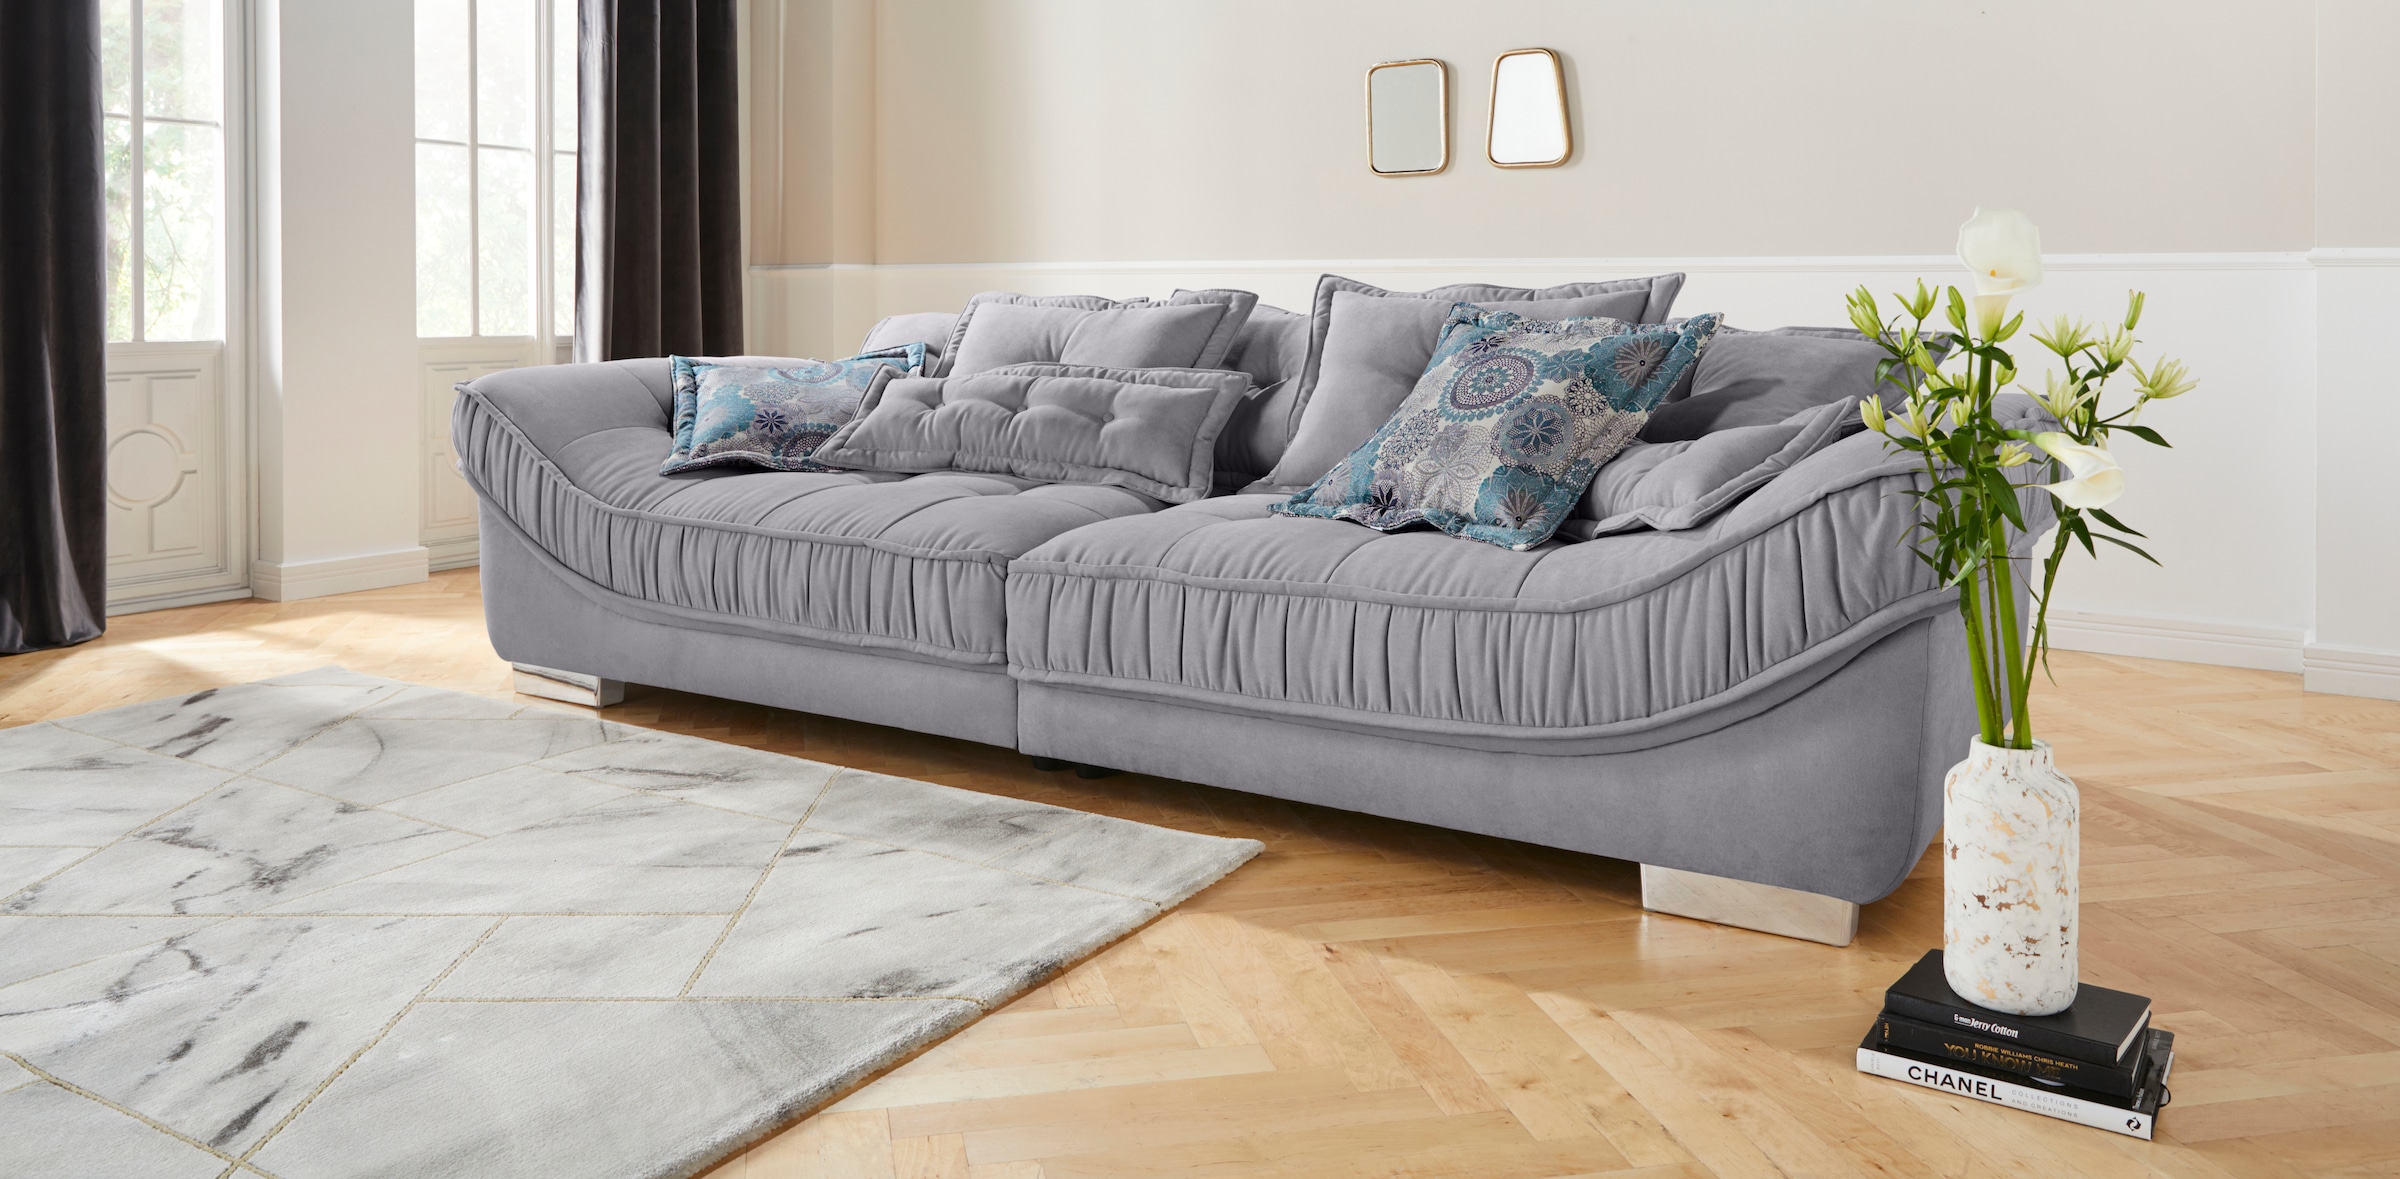 INOSIGN Big-Sofa »Diwan«, hochwertige Polsterung für bis zu 140 kg Belastbarkeit pro Sitzfläche